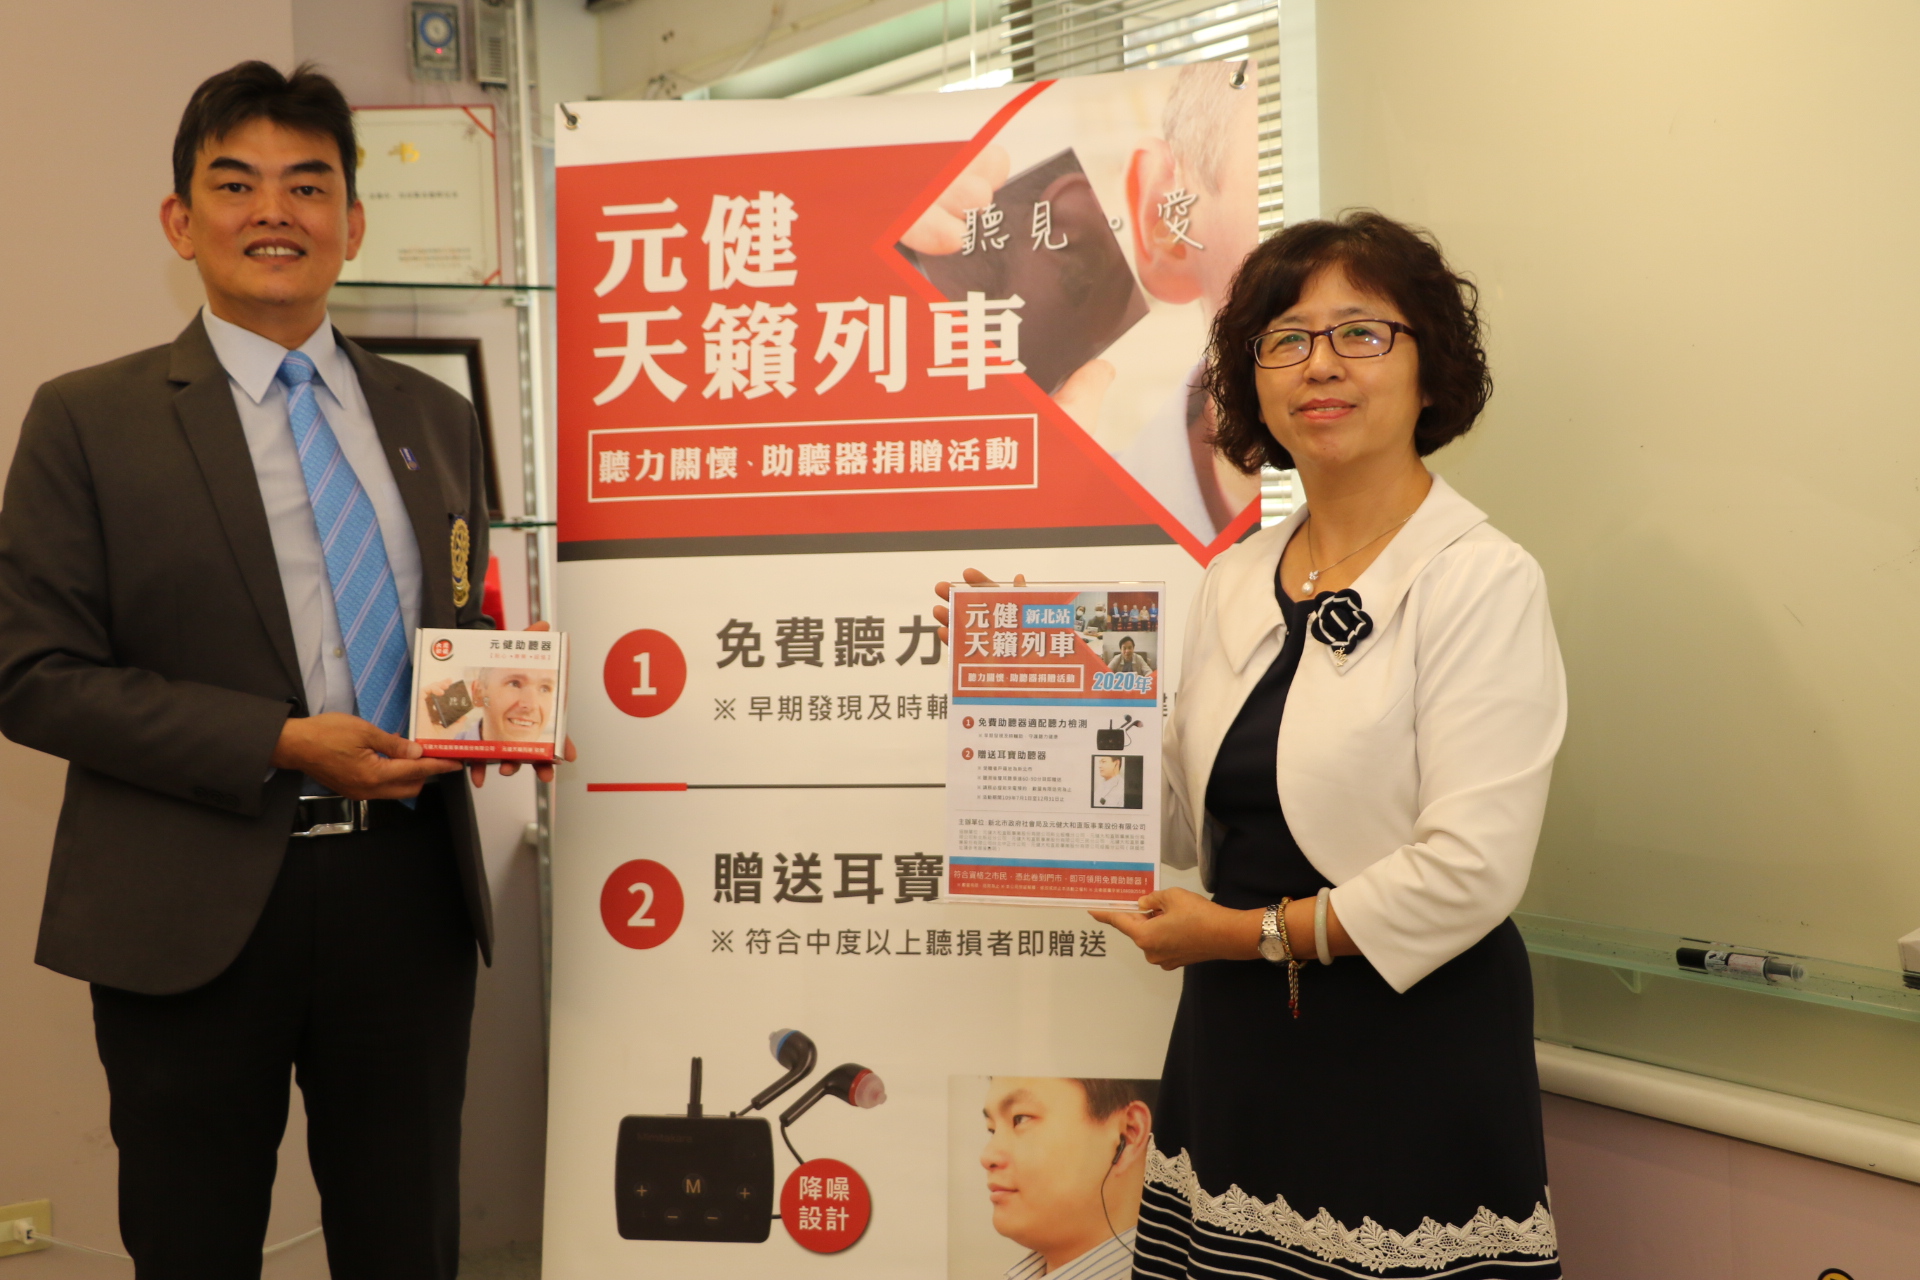 元健大和公司執行長吳志賢（左）代表捐贈1.4萬台助聽器兌領券  由許秀能副局長代表受贈